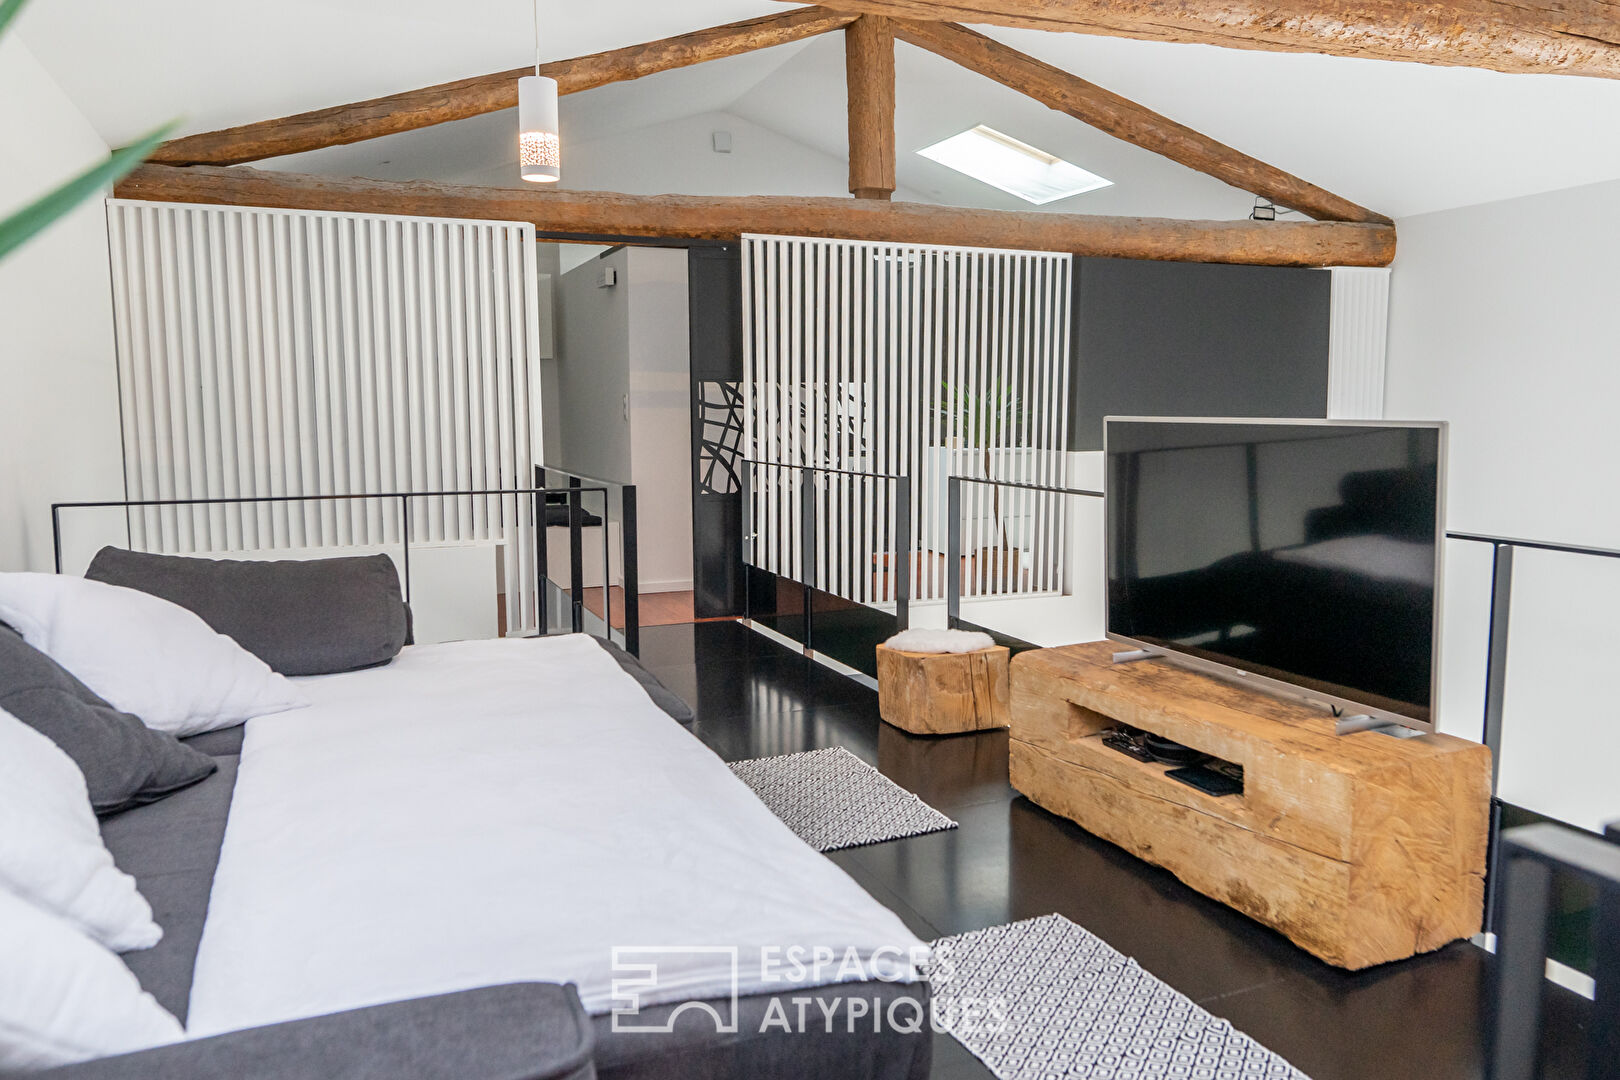 En Ardèche, un loft au confort généreux occupe discrètement une ancienne bergerie.